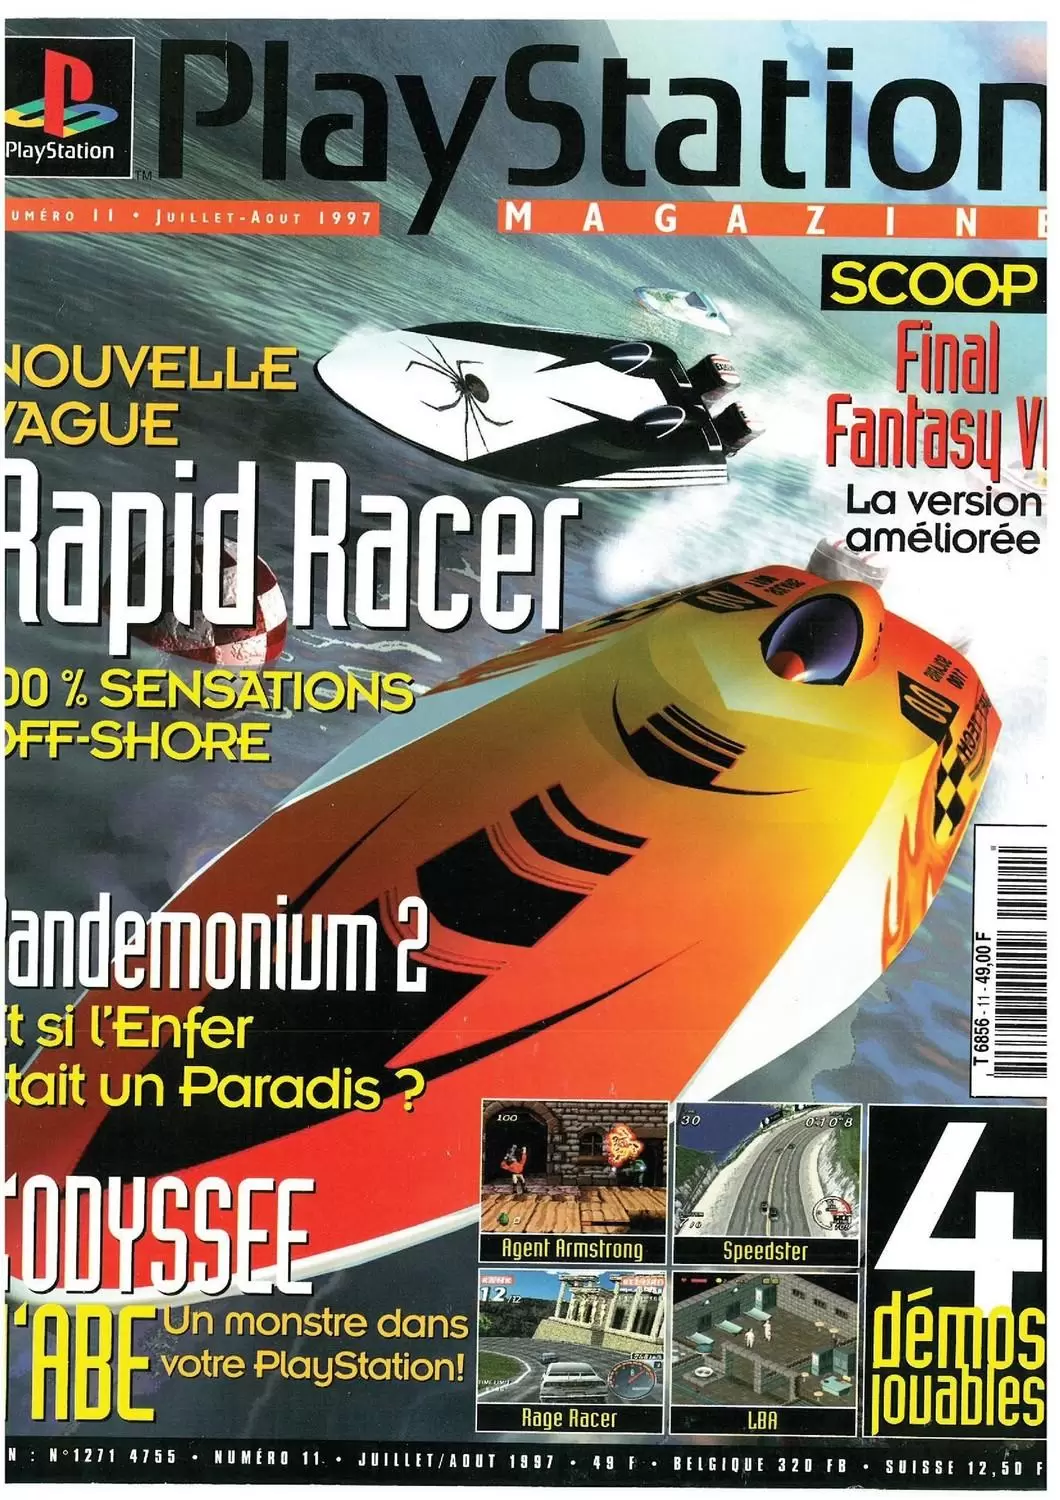 Playstation Magazine - Playstation Magazine #11